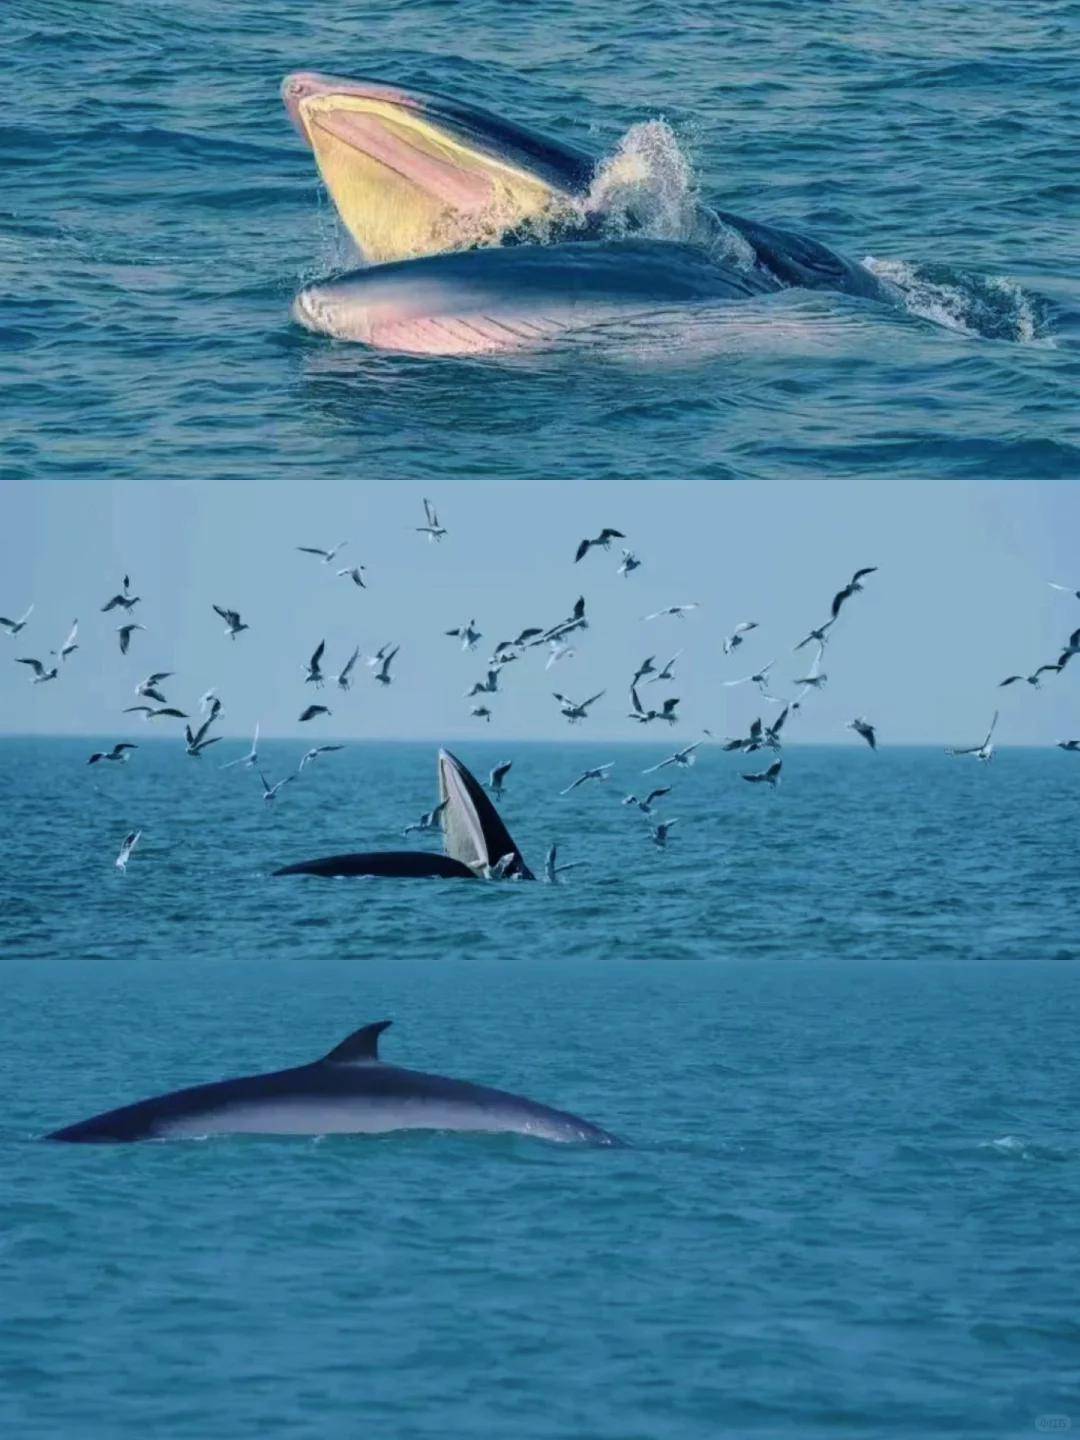 所以能在中国海域实现稳定的近海观鲸真的太难得了,并且还是能看到